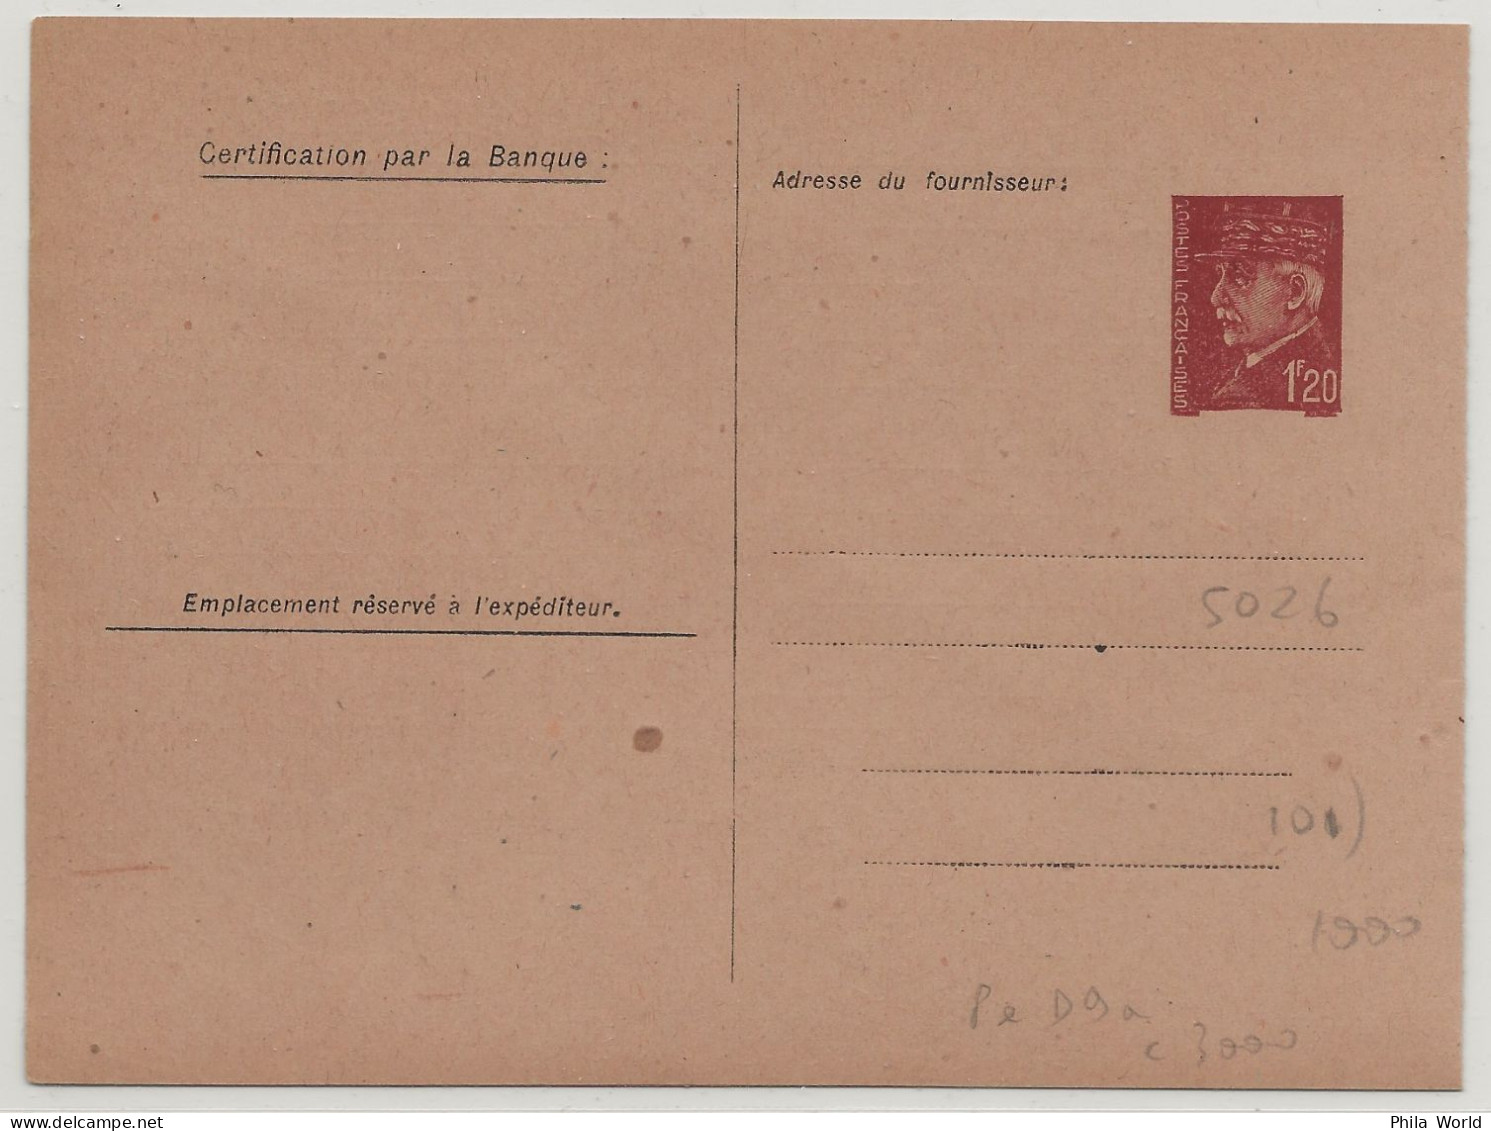 WW2 - Entier Postal 1,20 F PETAIN D9 A Avec Fiche Comptable Cheque Points Carte Postale Service Postal Stationery - Guerre Mondiale (Seconde)